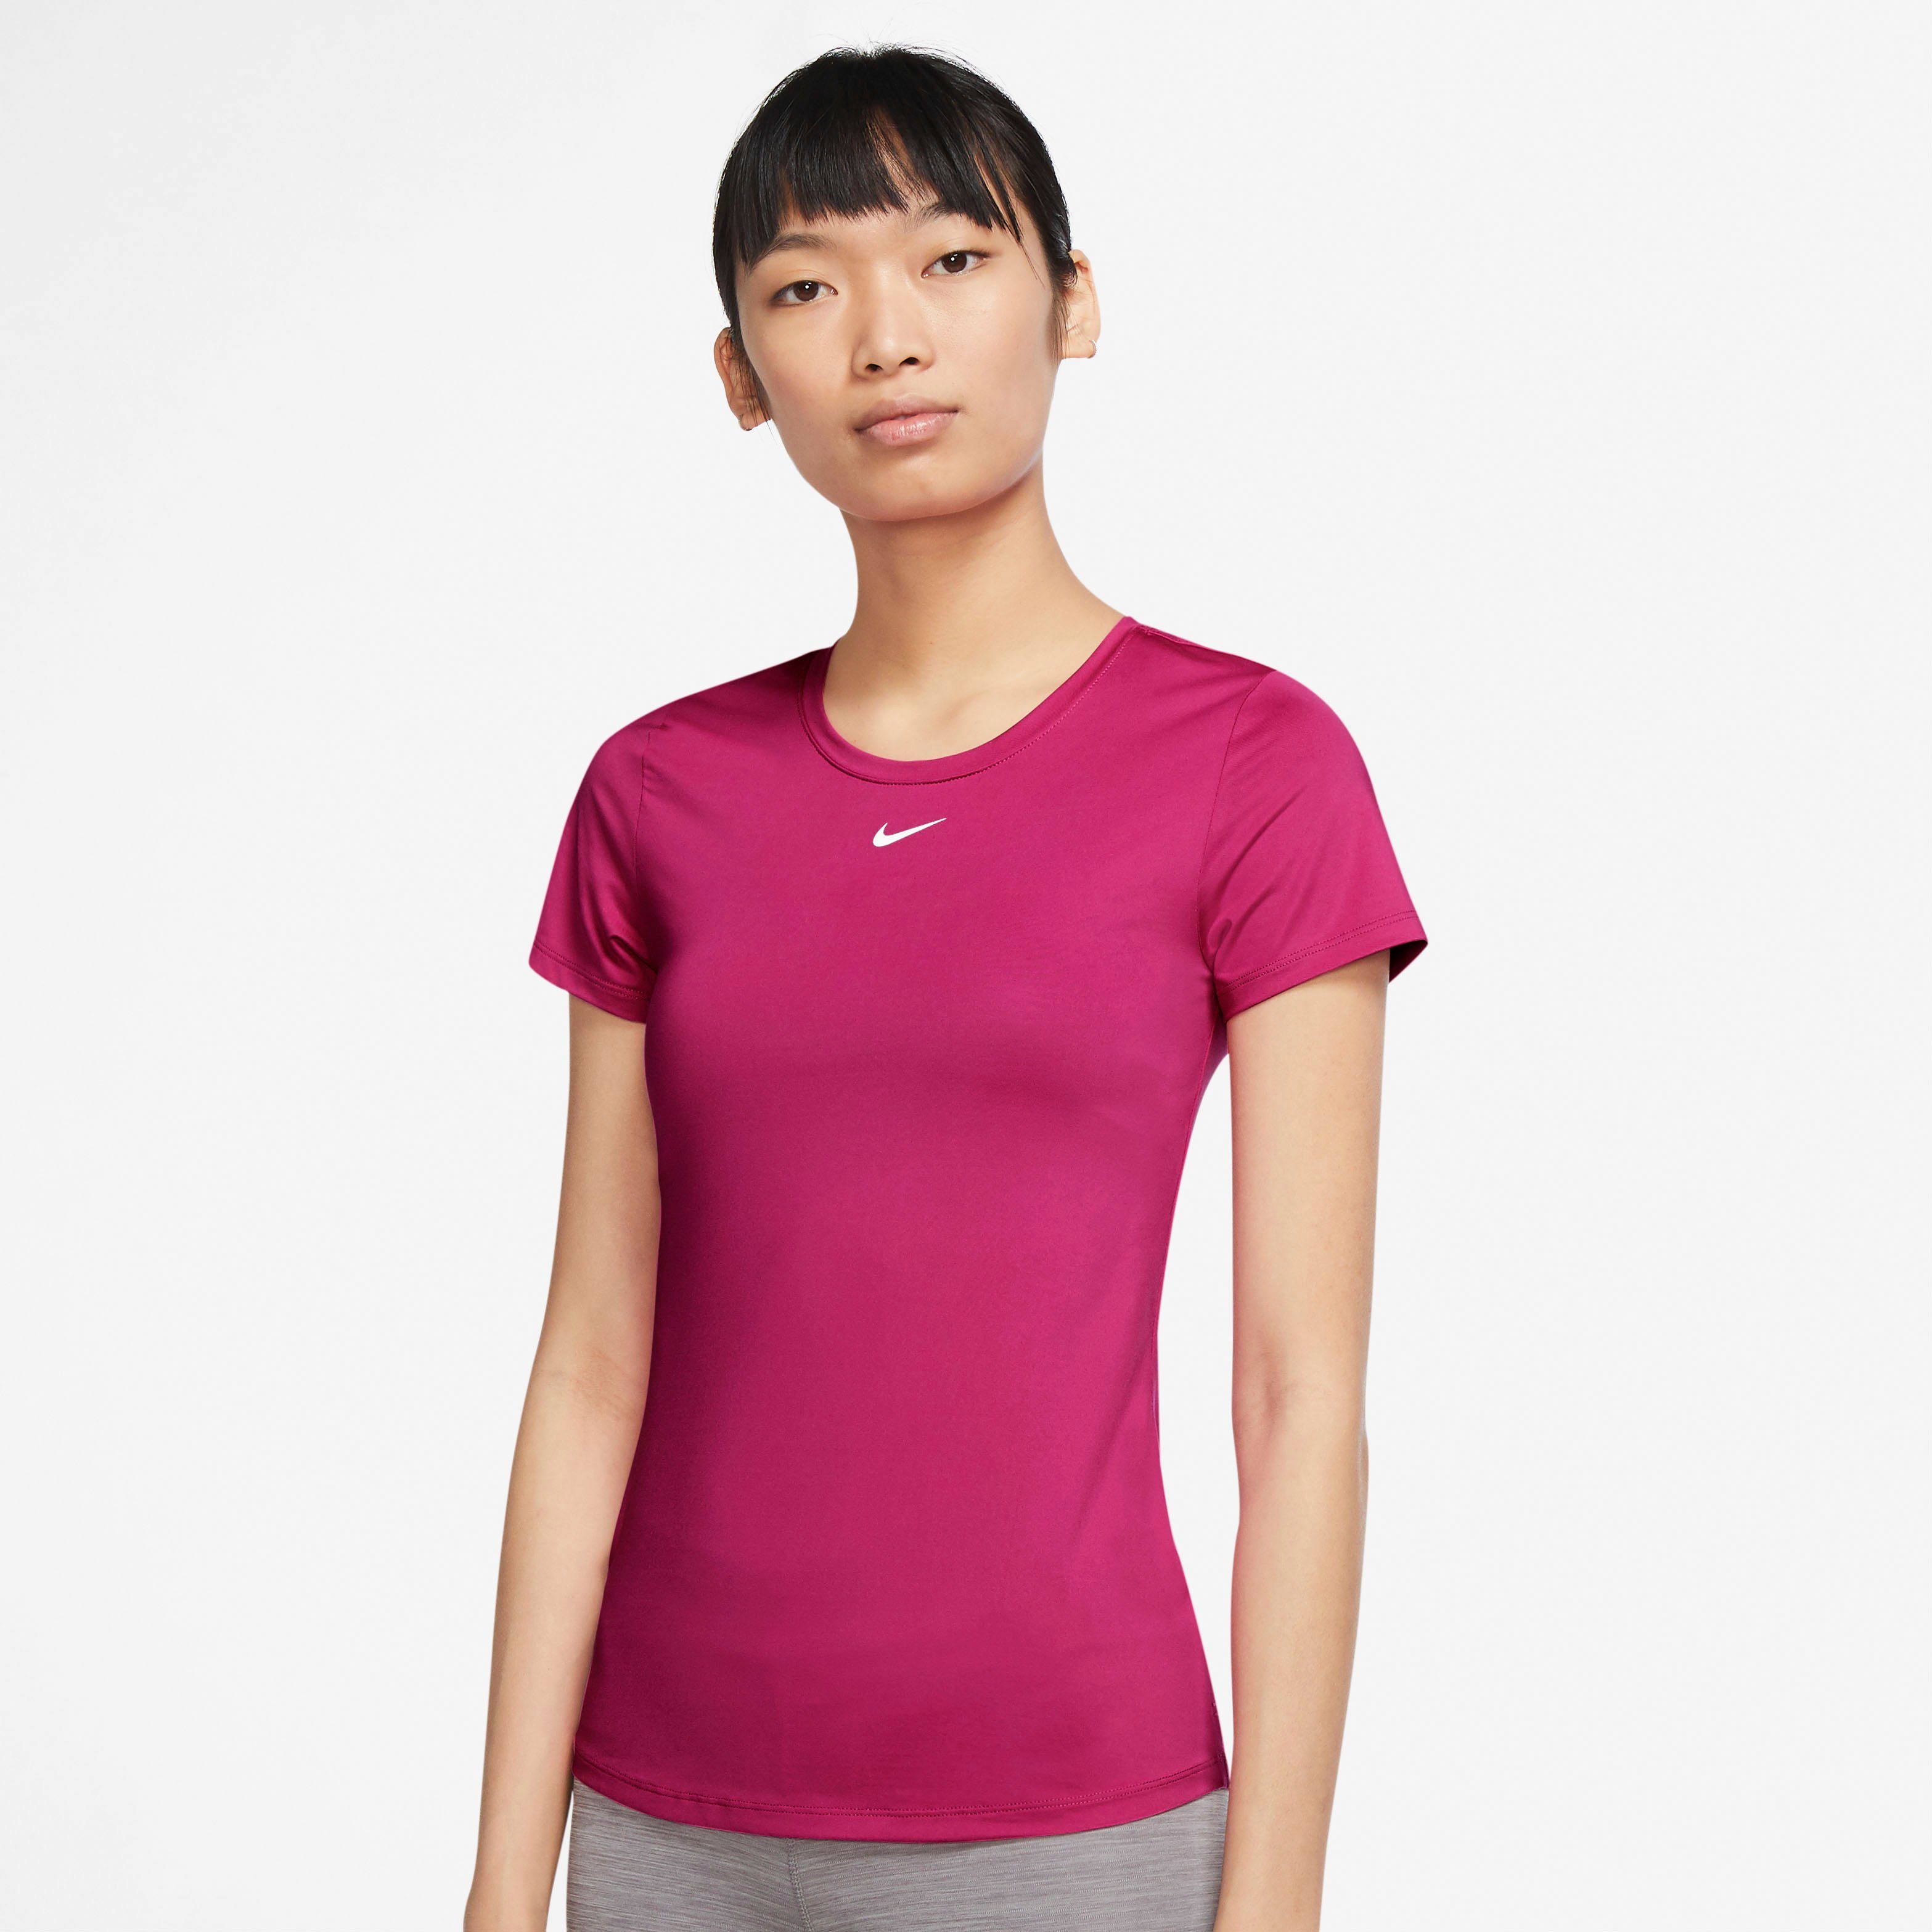 Nike Damen Funktionsshirts online kaufen | OTTO